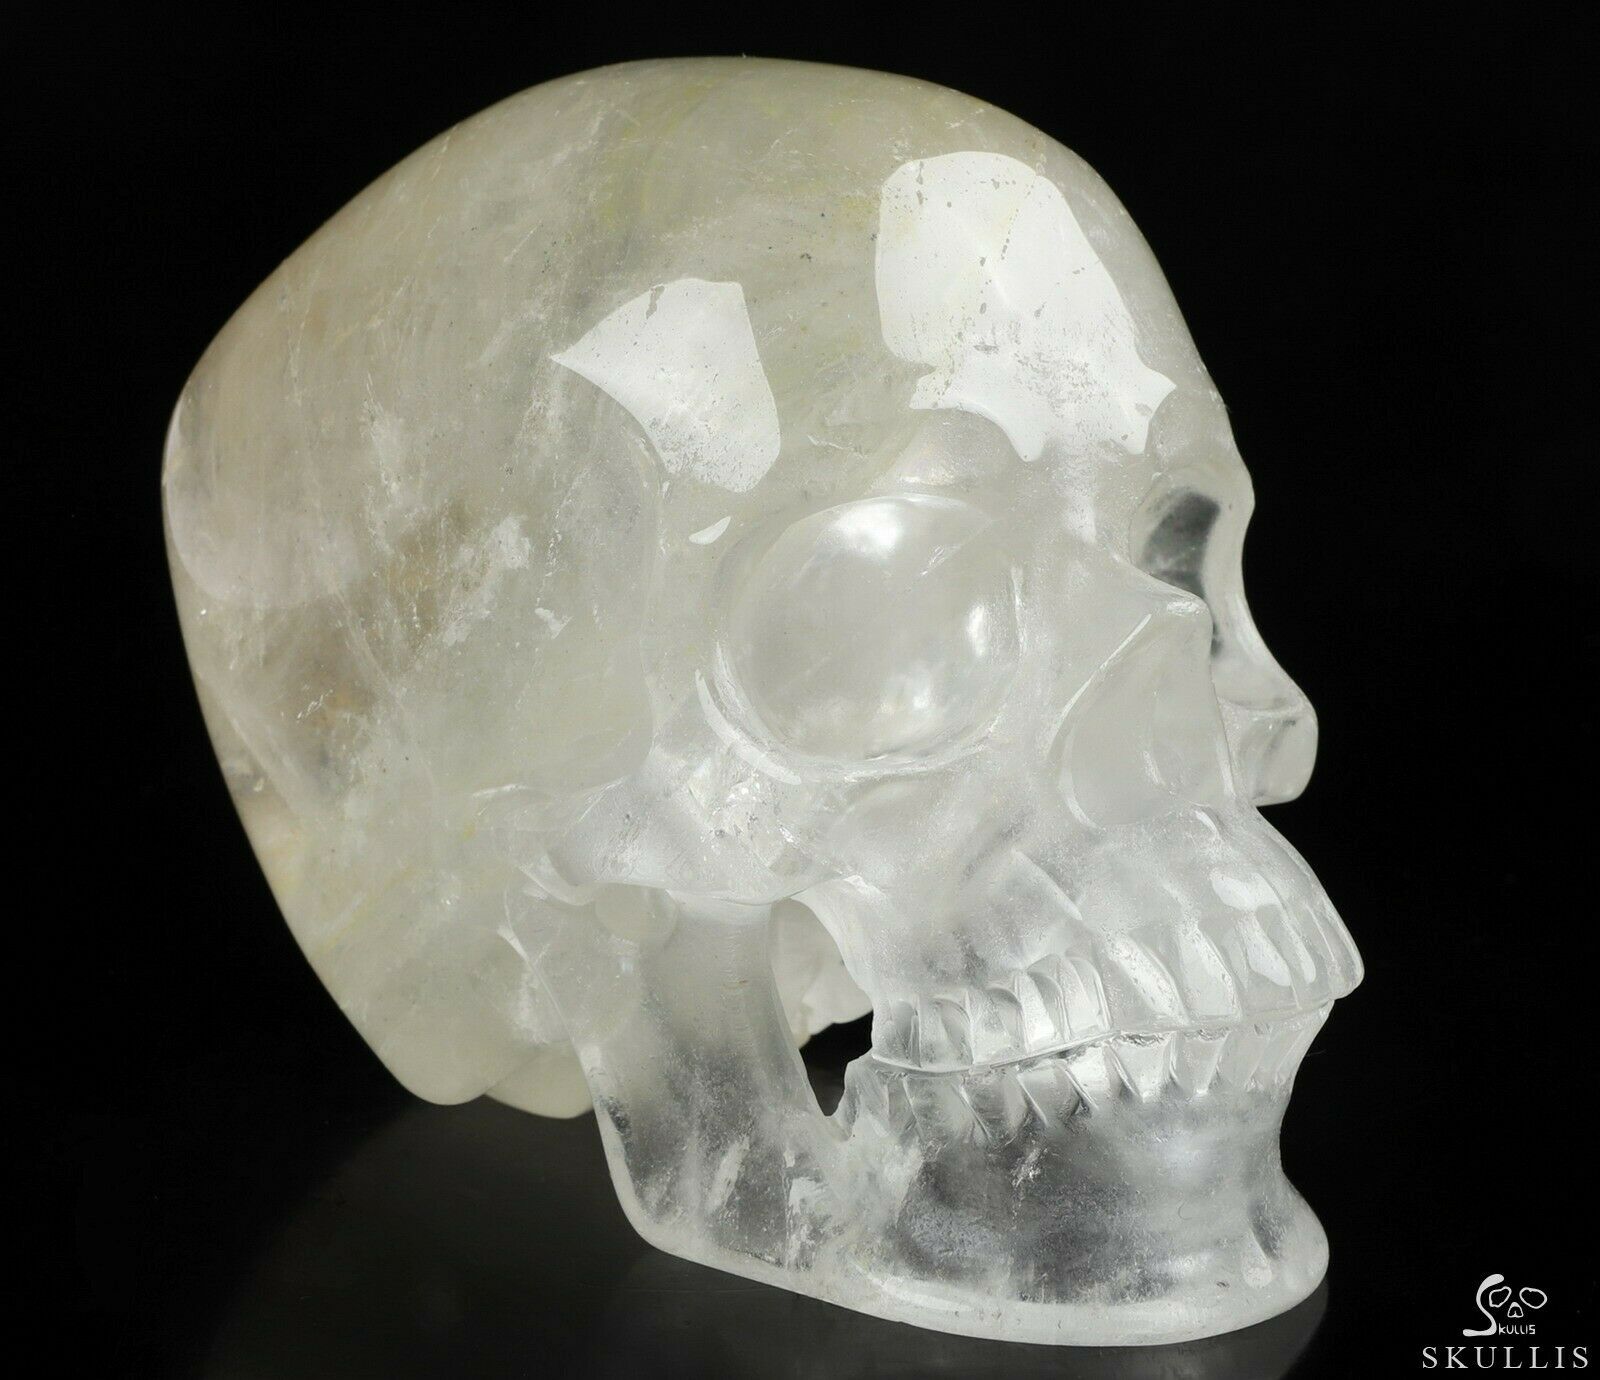 Huge 5.0" Quartz Rock Crystal Carved Crystal Skull,super Realistic, Healing #067